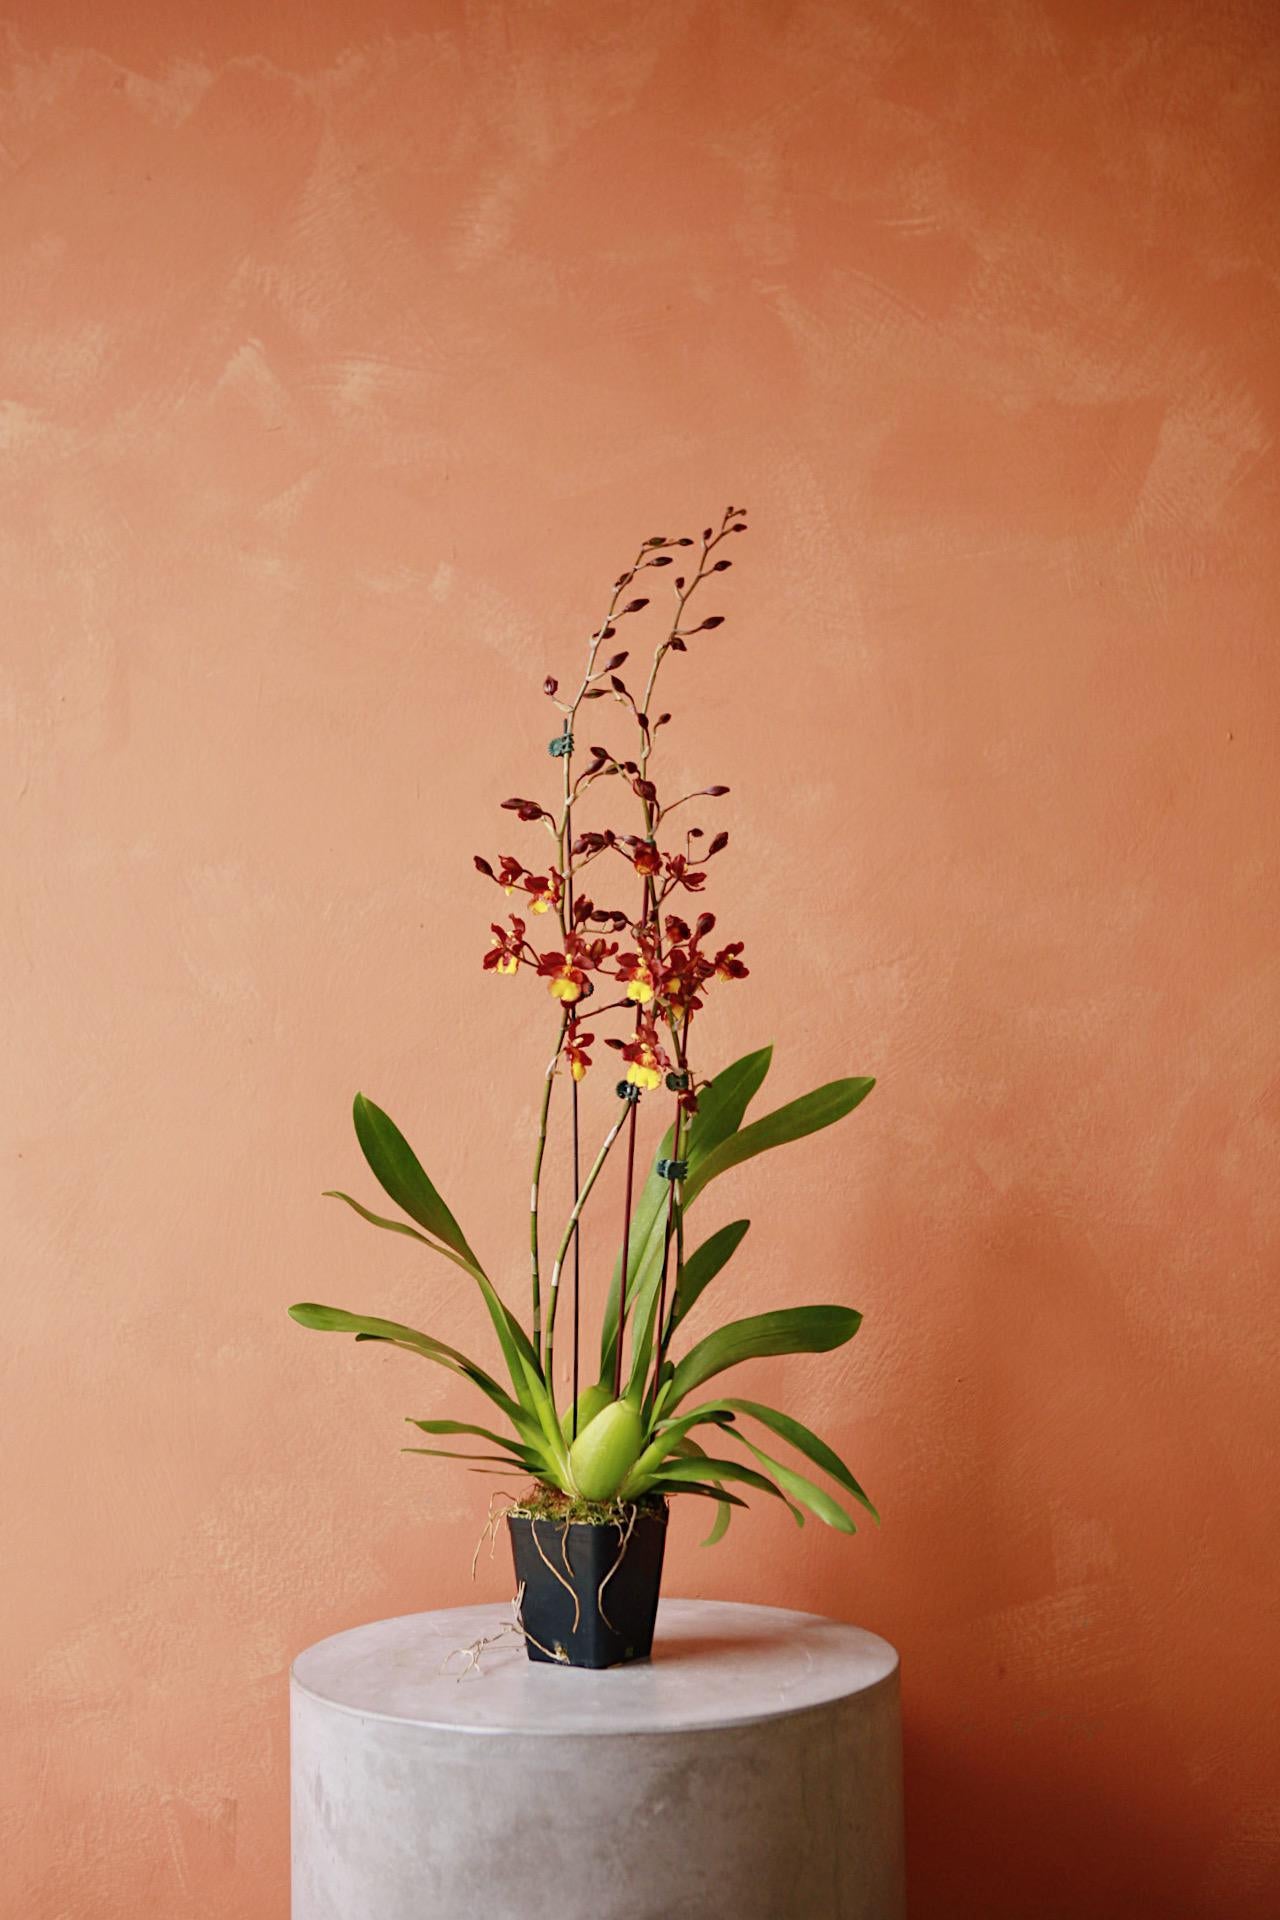 Oncidium/Intergenic Orchid